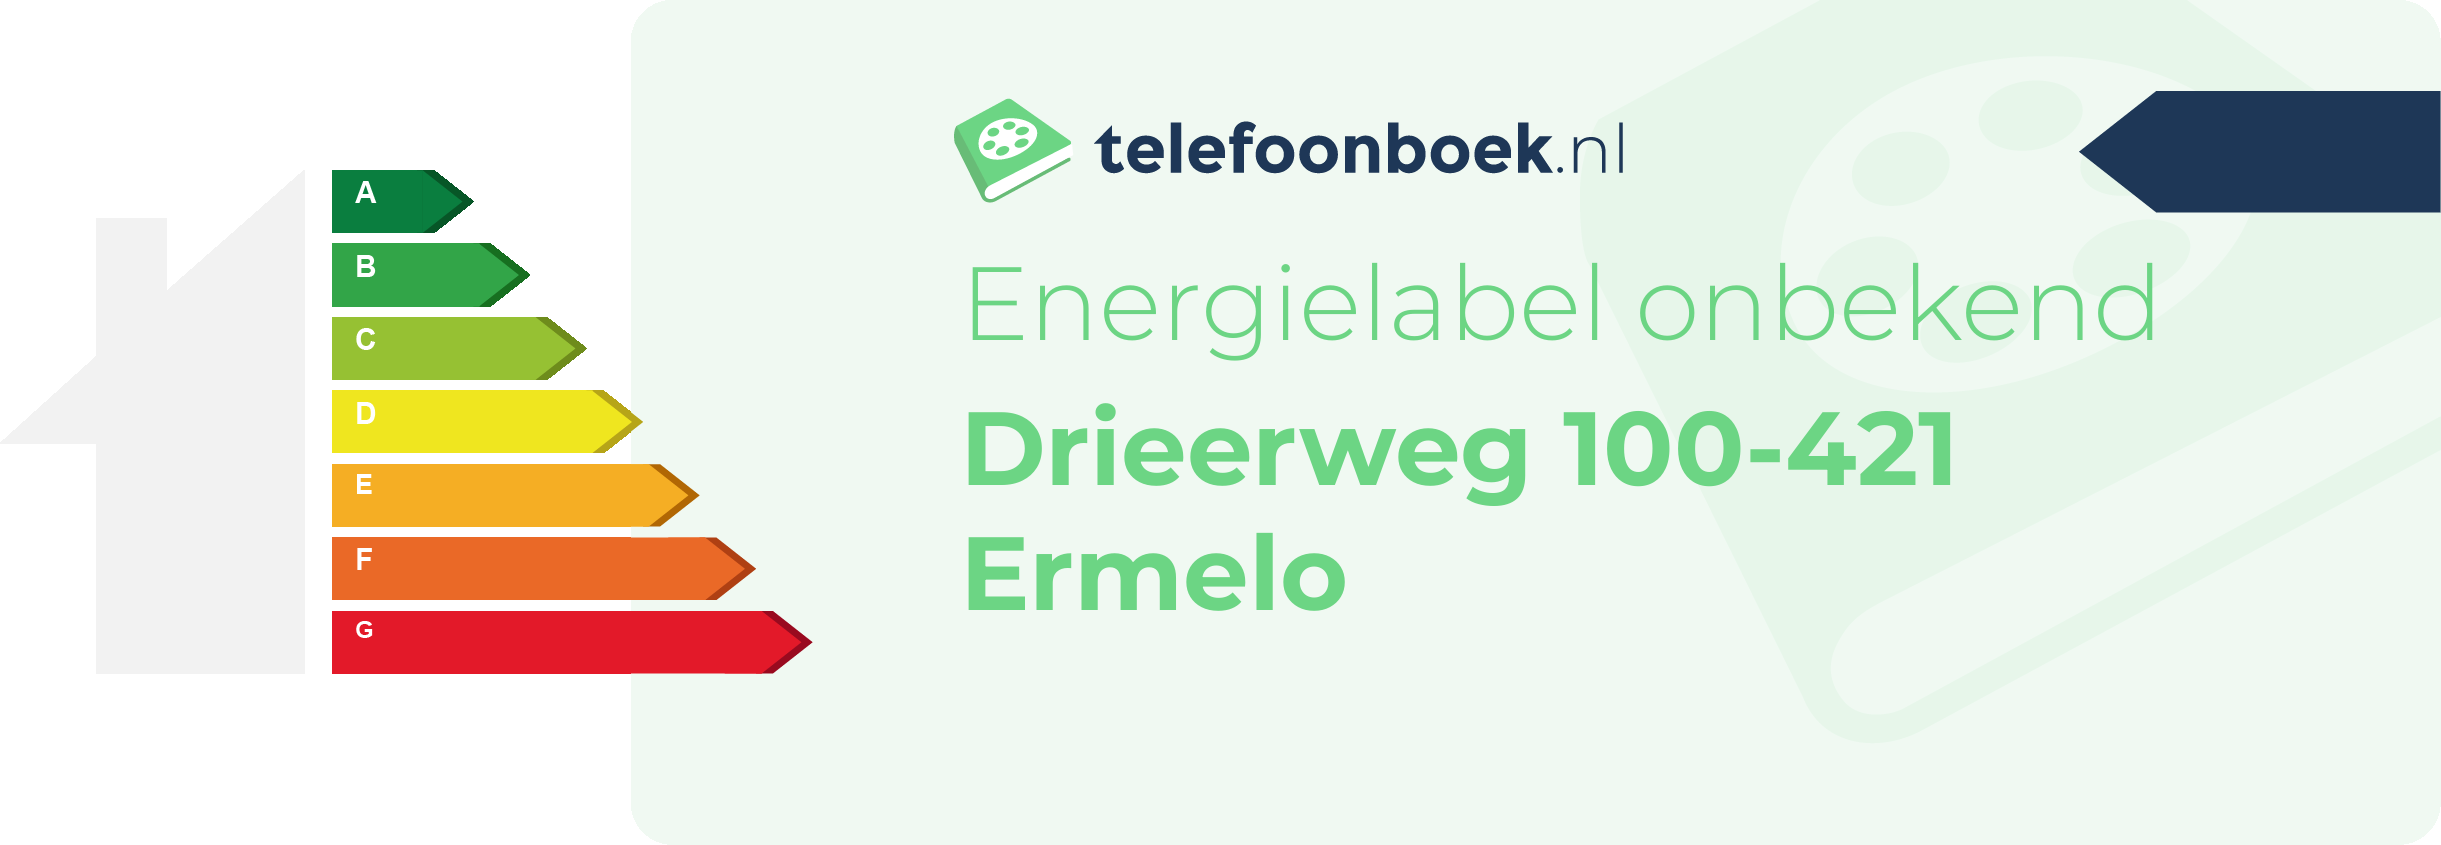 Energielabel Drieerweg 100-421 Ermelo